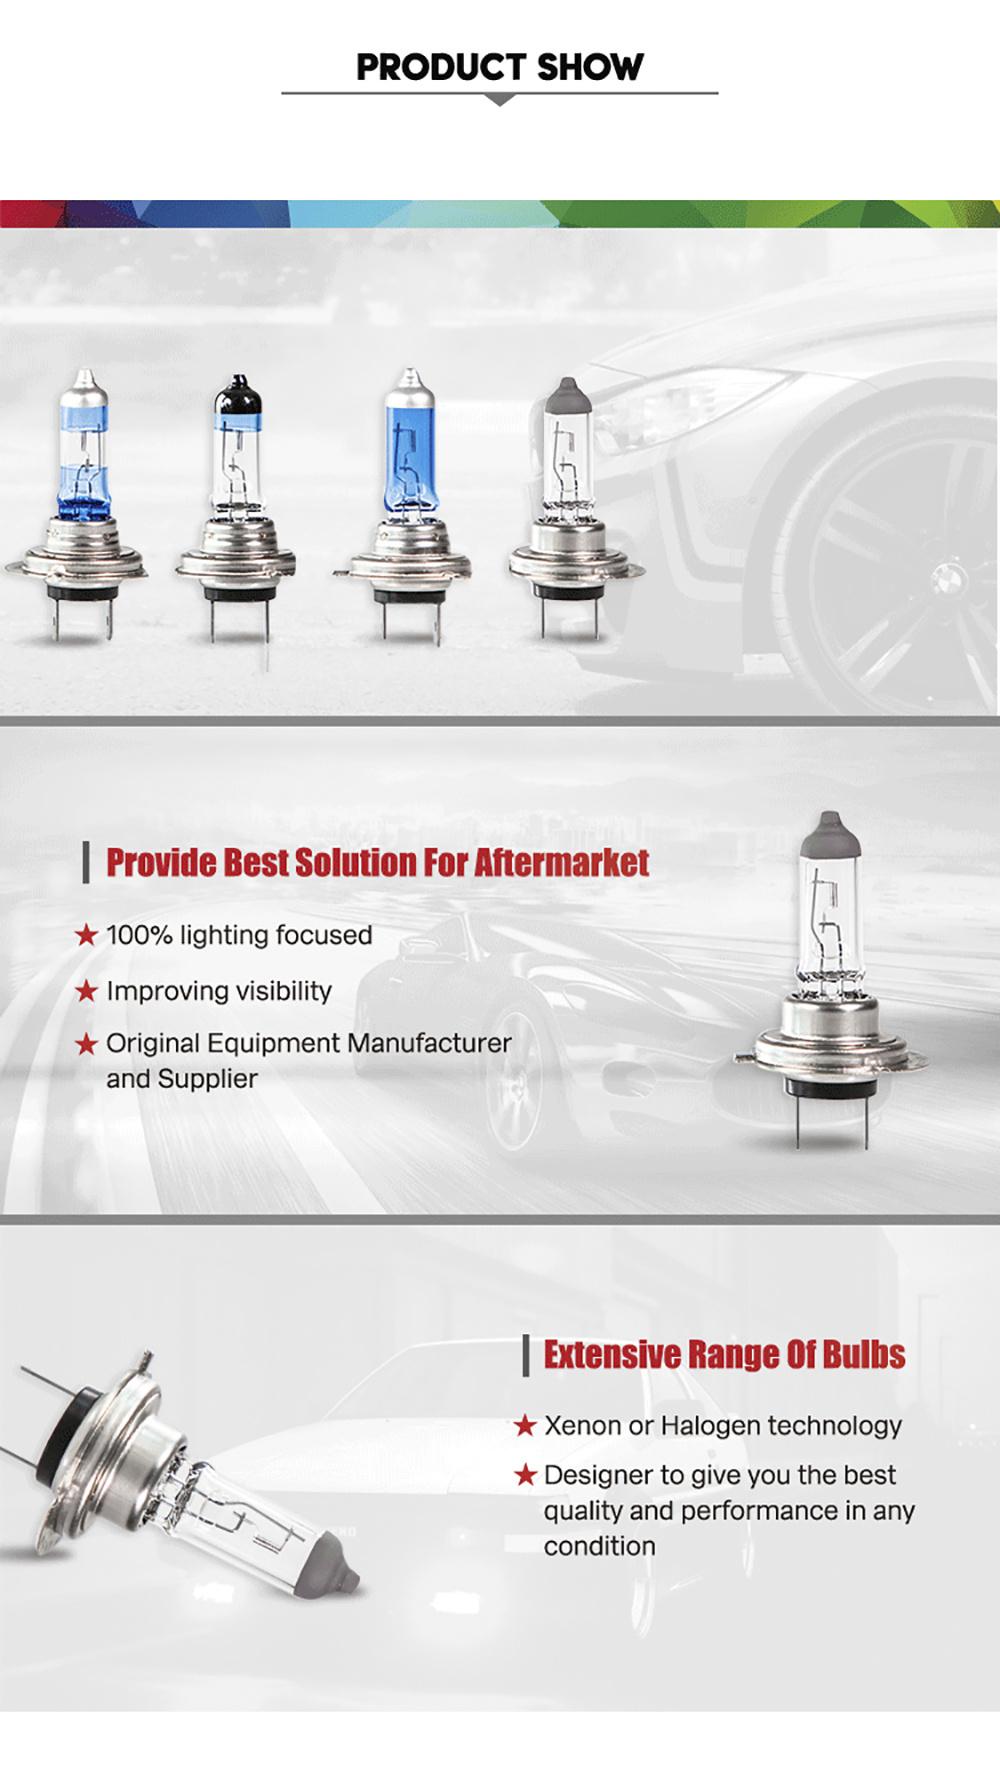 Fagis E-MARK DOT H7 12V 55W Clear Car Headlight Auto Halogen Bulbs